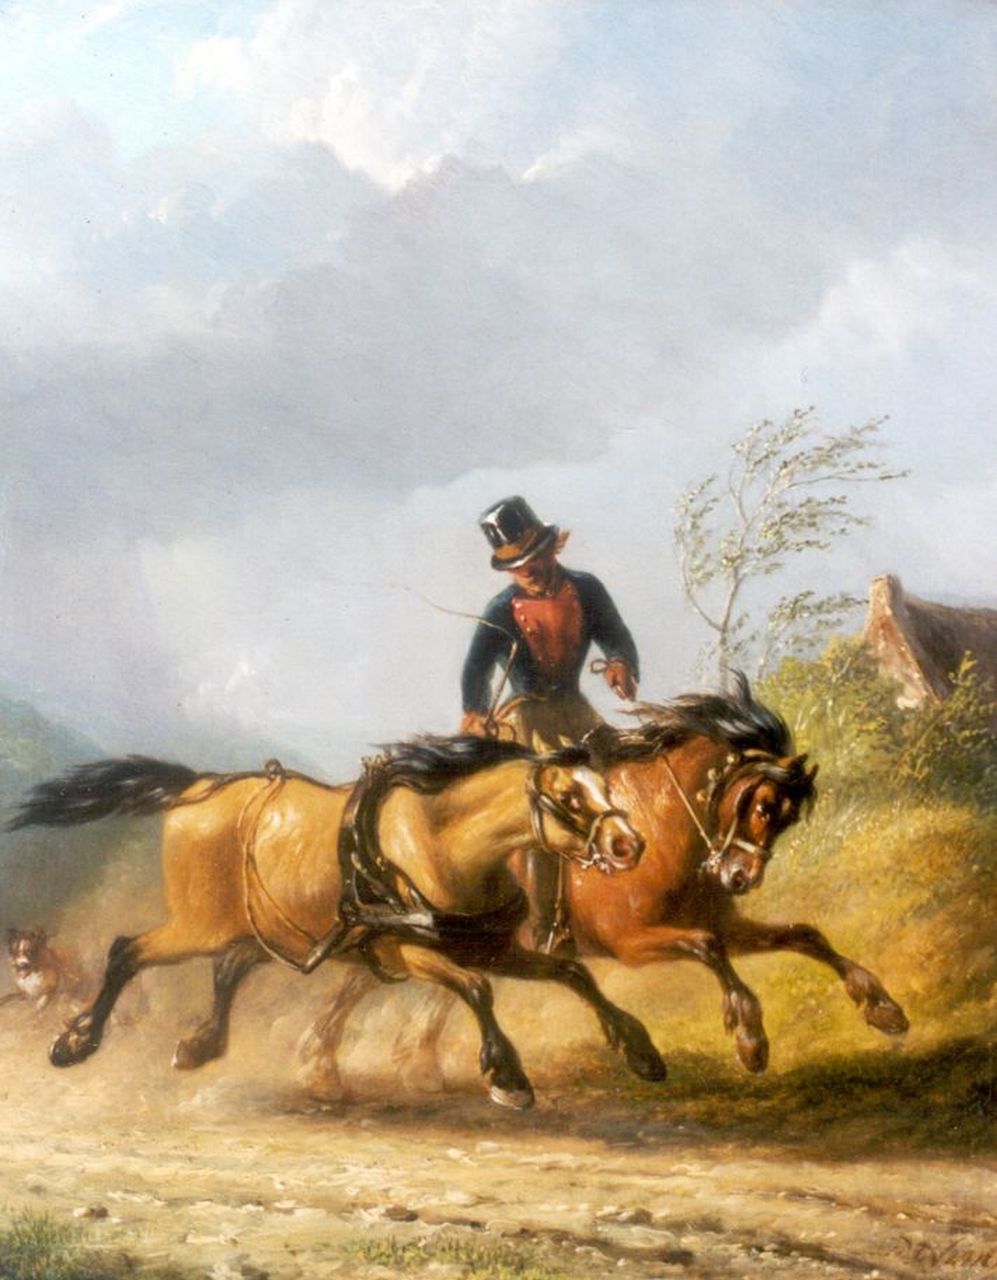 Os P.F. van | Pieter Frederik van Os, Het losgebroken paard beteugeld, olieverf op paneel 30,0 x 24,5 cm, gesigneerd rechtsonder